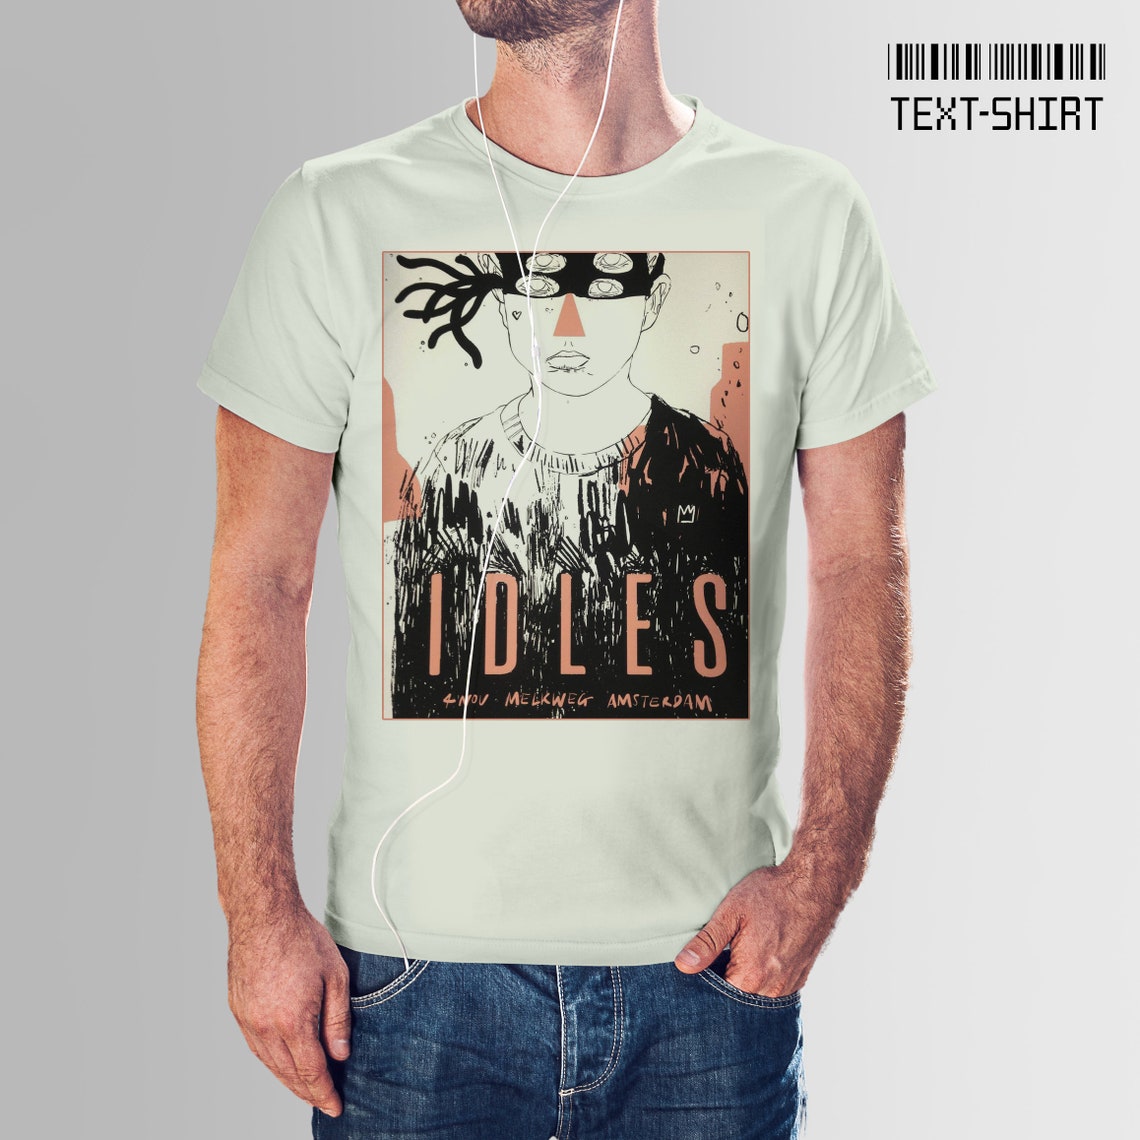 IDLES 1. t-shirt for women and men/ unique punk rock | Etsy